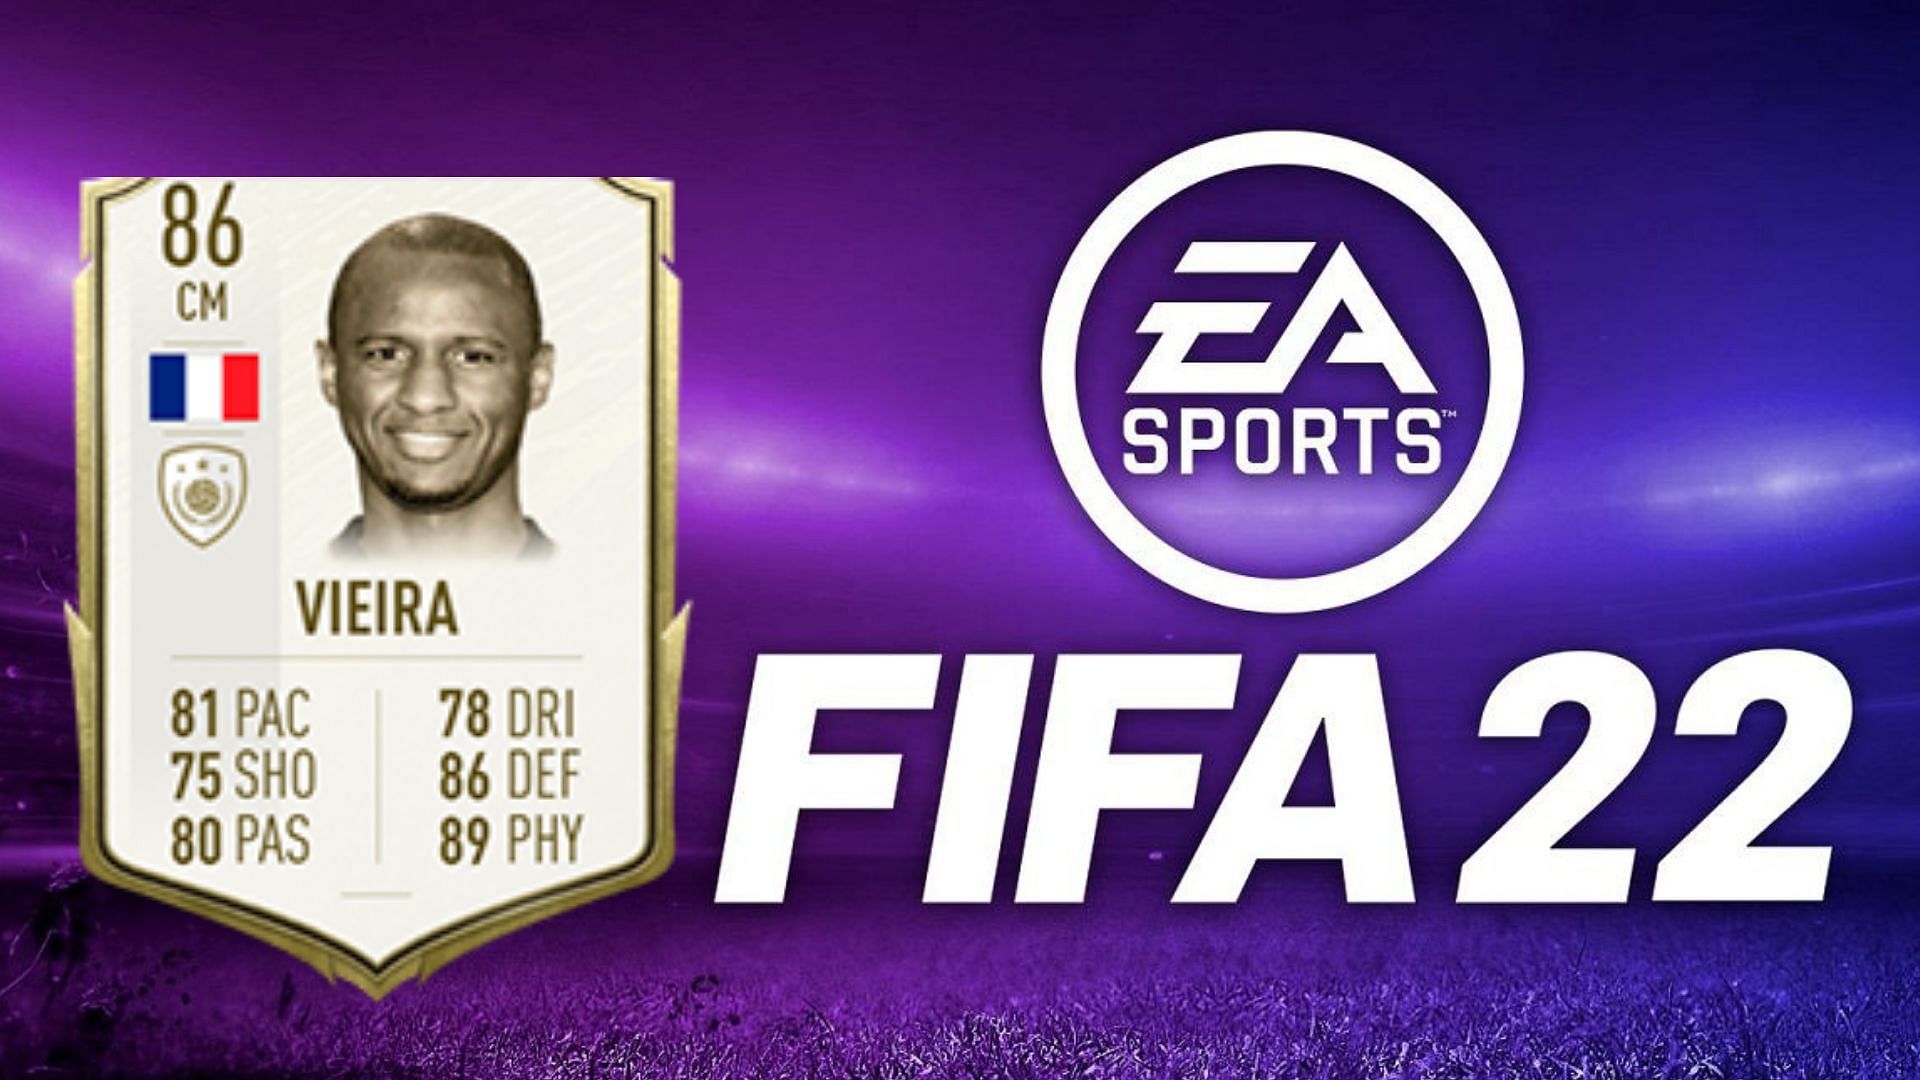 Vieira base icon SBC is live in FIFA 22 (Image via Sportskeeda)